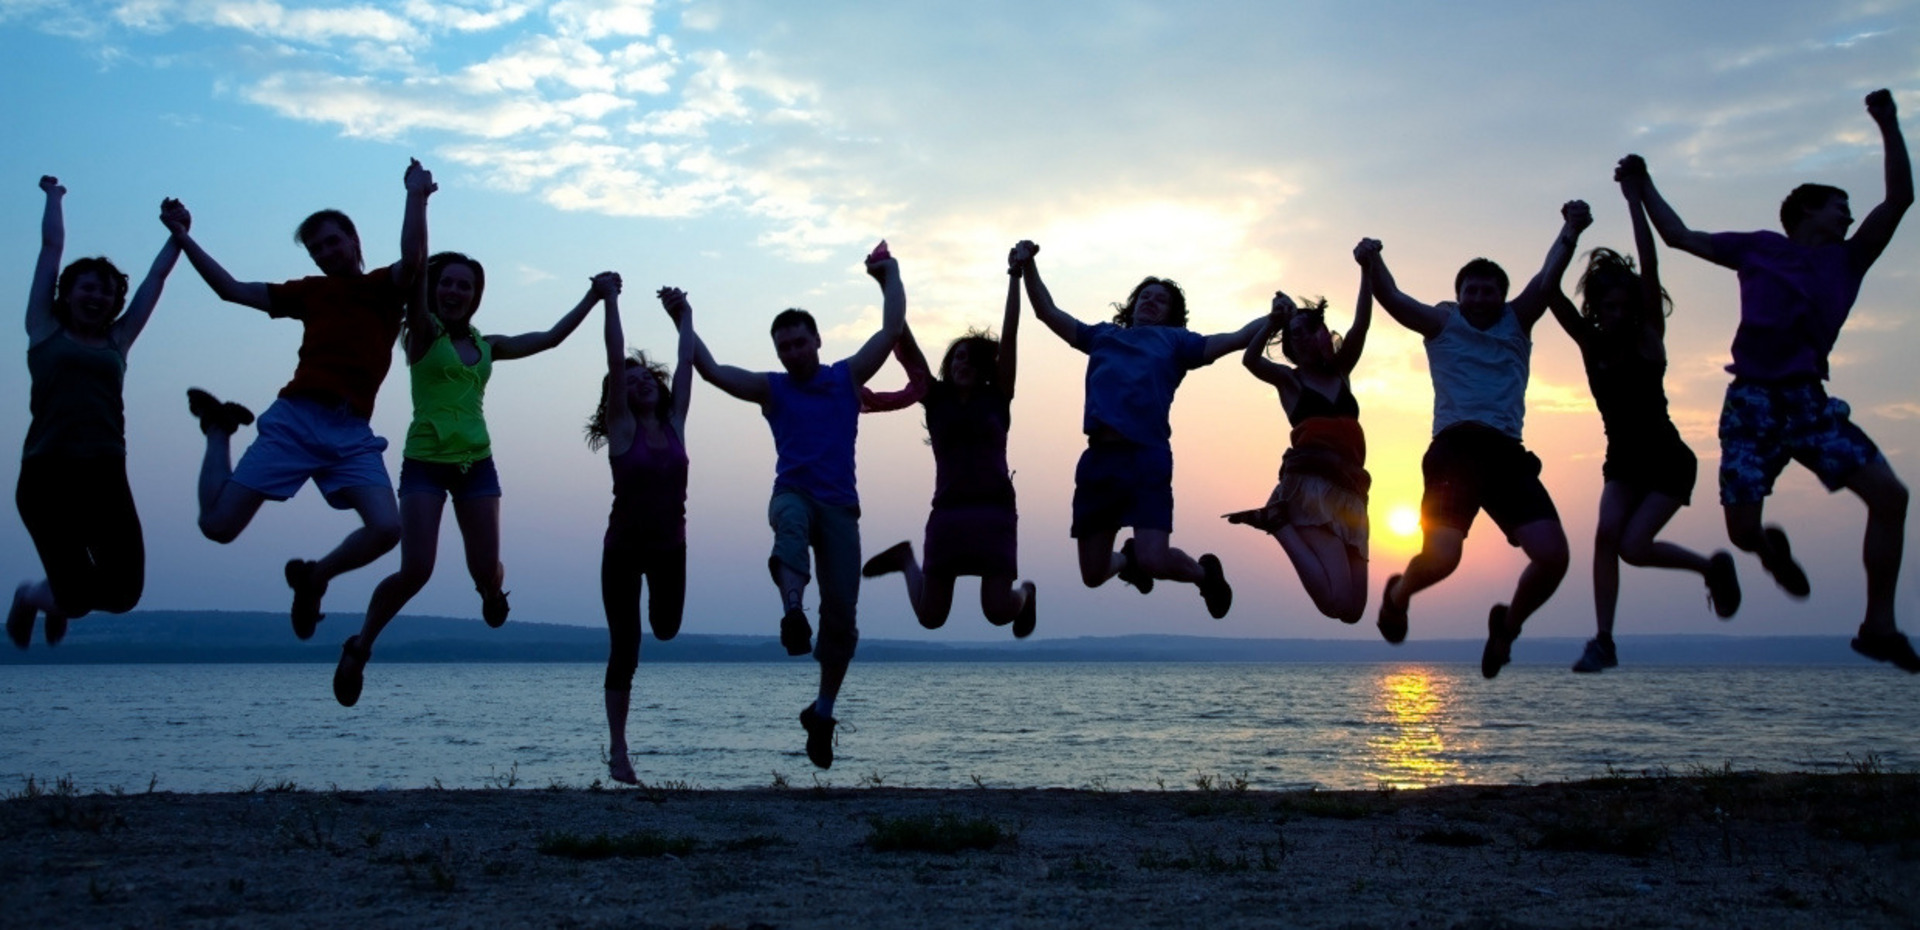 Jugendliche halten sich an den Händen und springen vor einem Sonnenuntergang hoch.